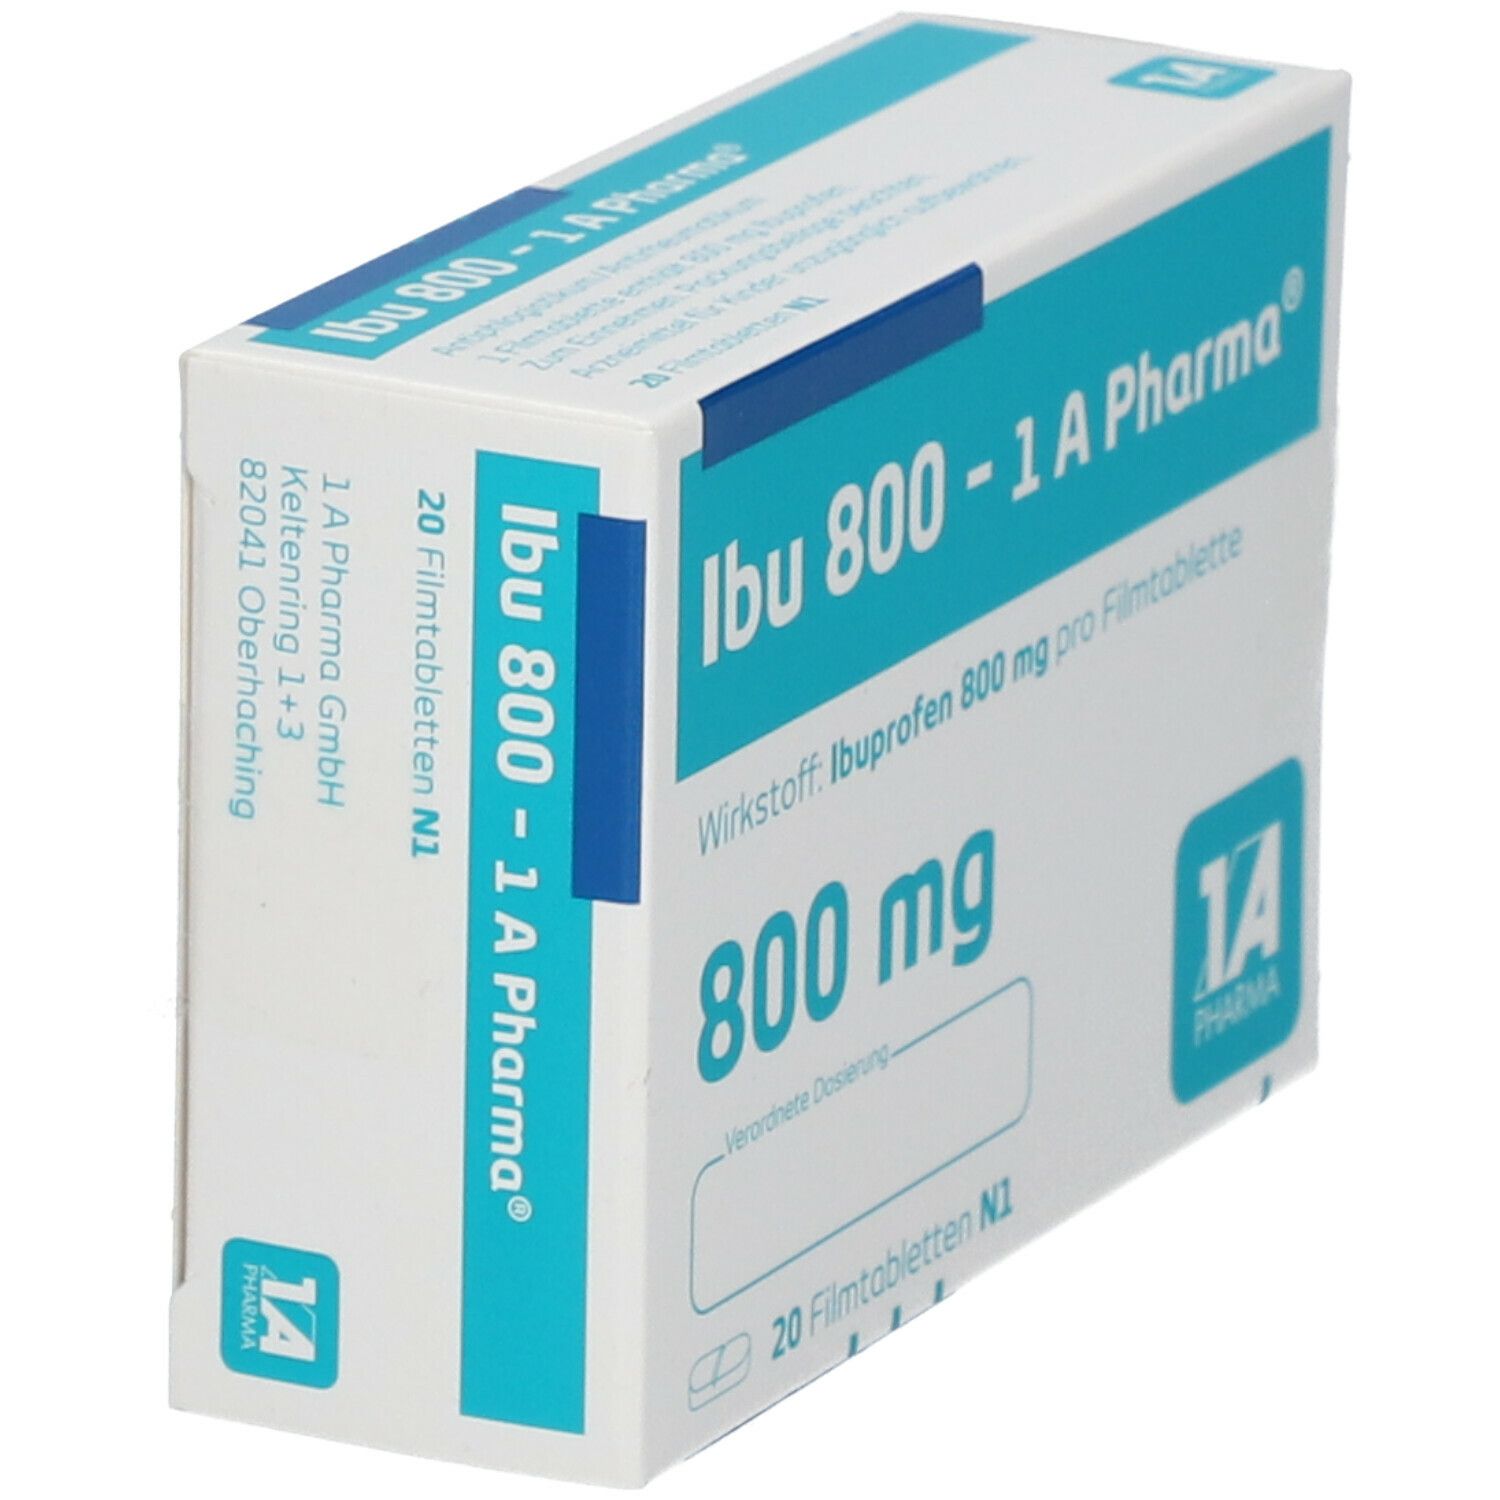 Ibu 800 - 1 A Pharma®